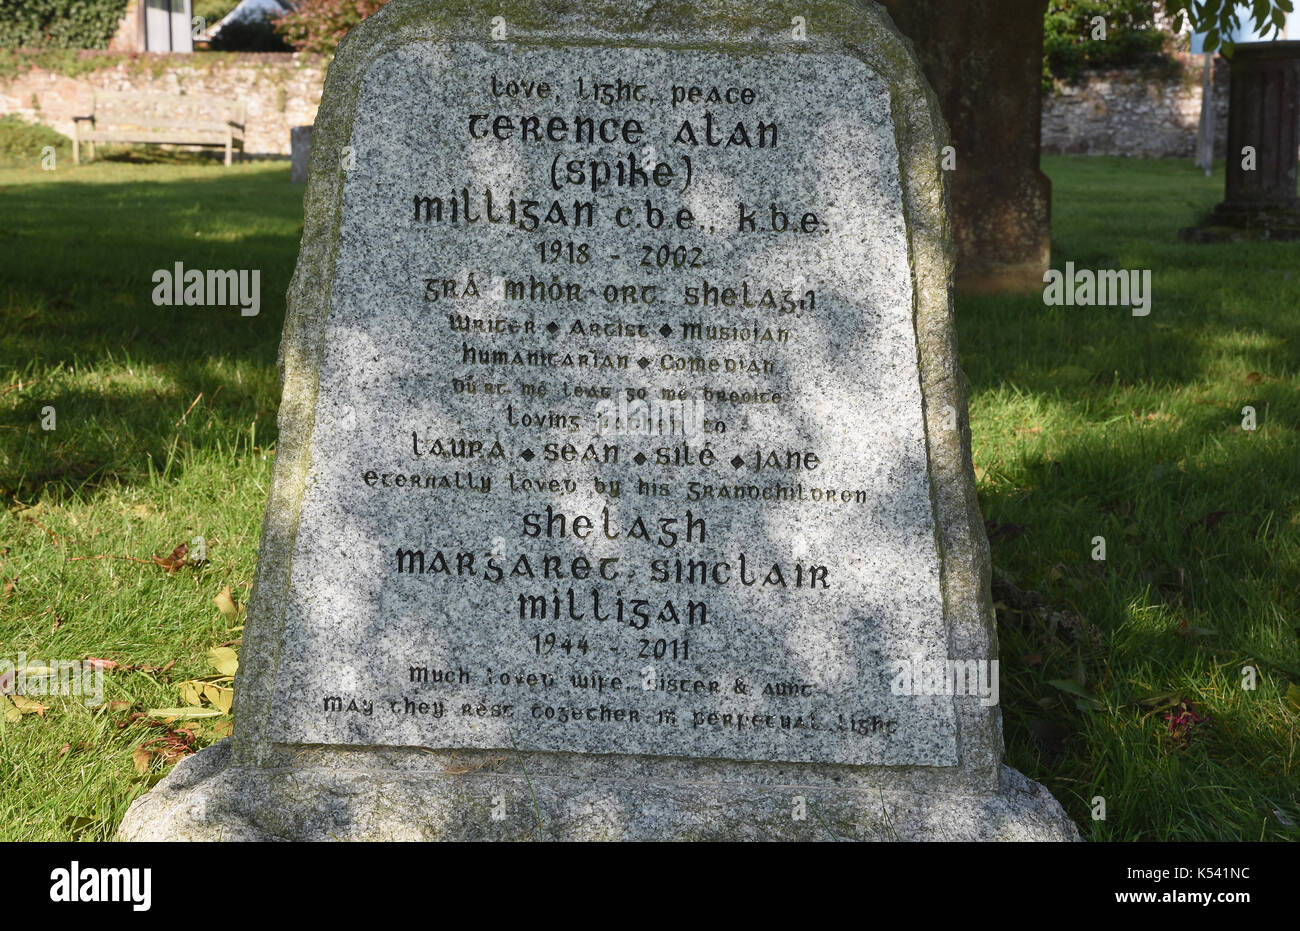 Der Spike Milligan Grabstein mit der Inschrift "Ich habe euch gesagt, dass ich krank war" in Gälisch geschrieben, Thomaskirche, Winchelsea, East Sussex. Großbritannien Stockfoto